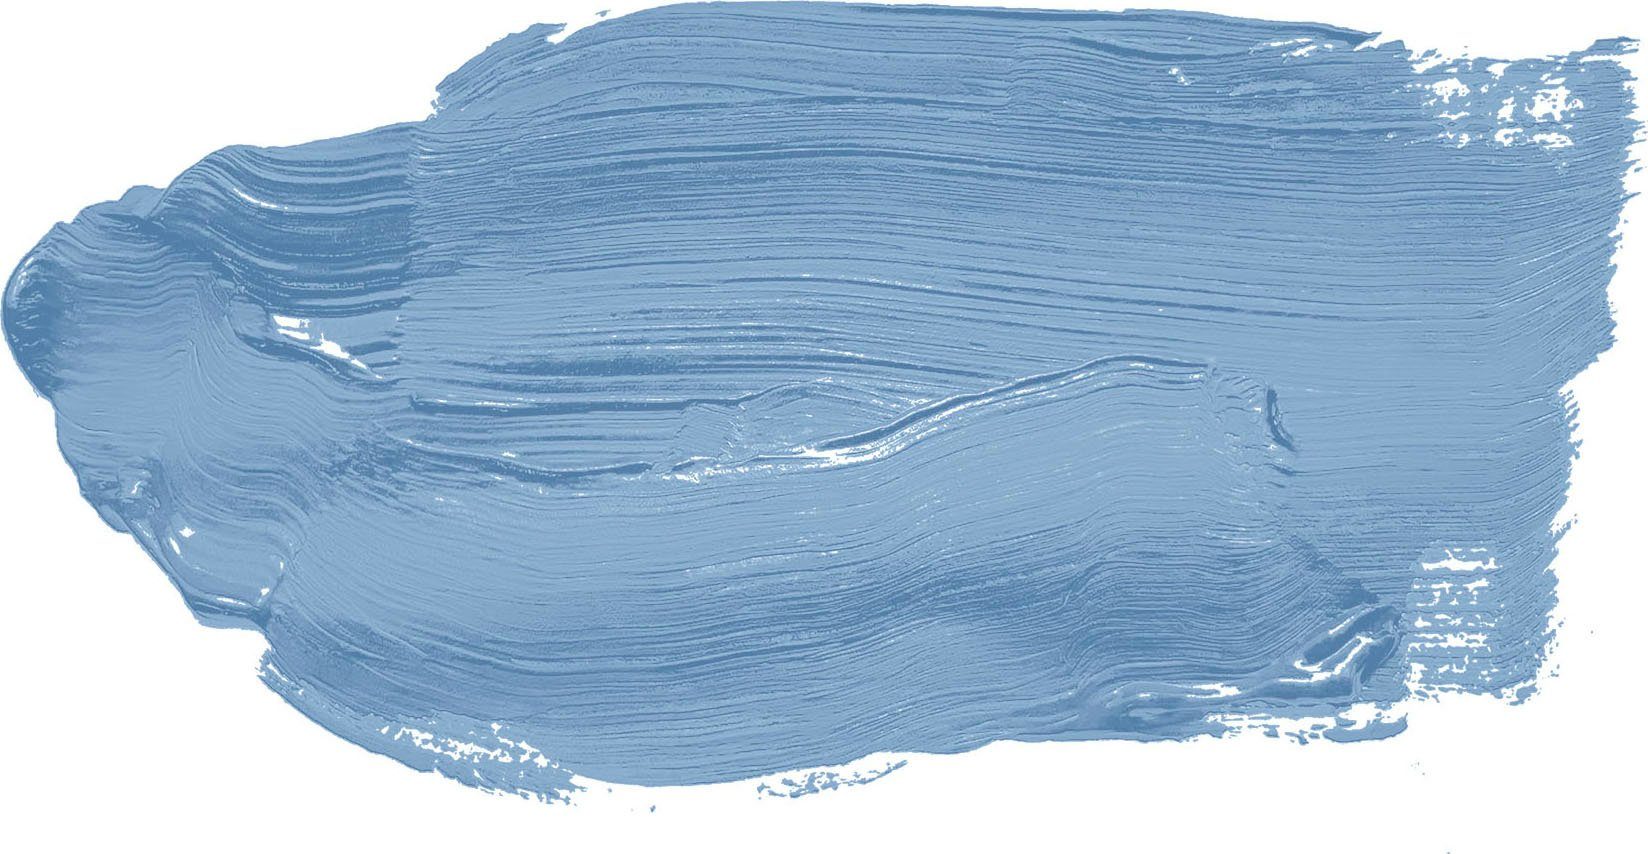 Flur Schlafzimmer KITCHEN, Deckenfarbe TCK3004 Blautöne Wohnzimmer Création Wand- seidenmatt, COLOR Herring THE für A.S. Blue und Küche,